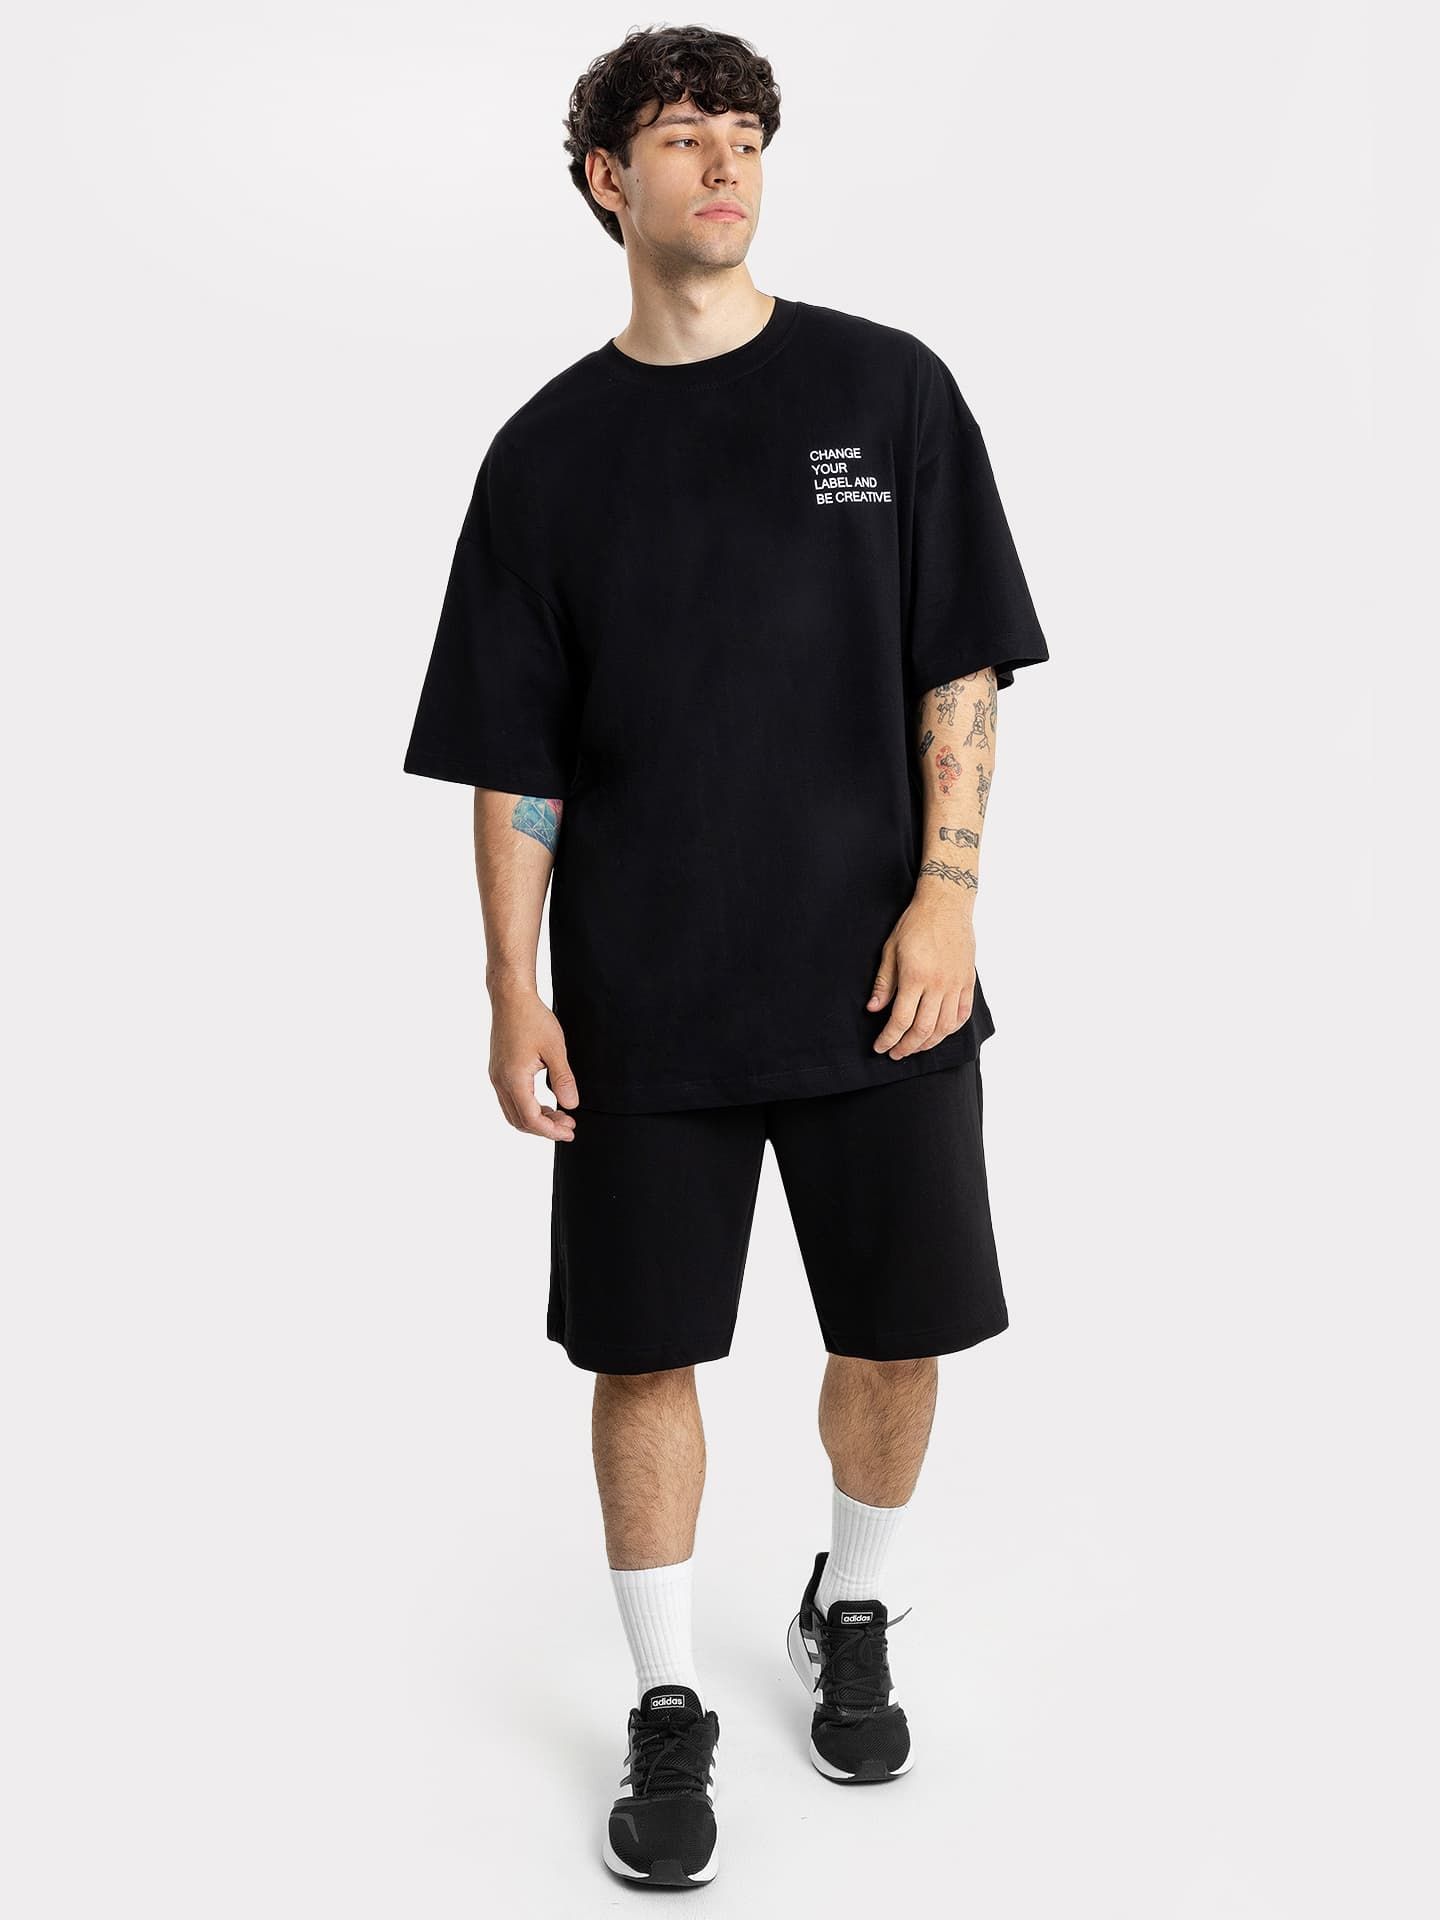 Мужской комплект (футболка оверсайз и шорты) в черном цвете с текстовым принтом